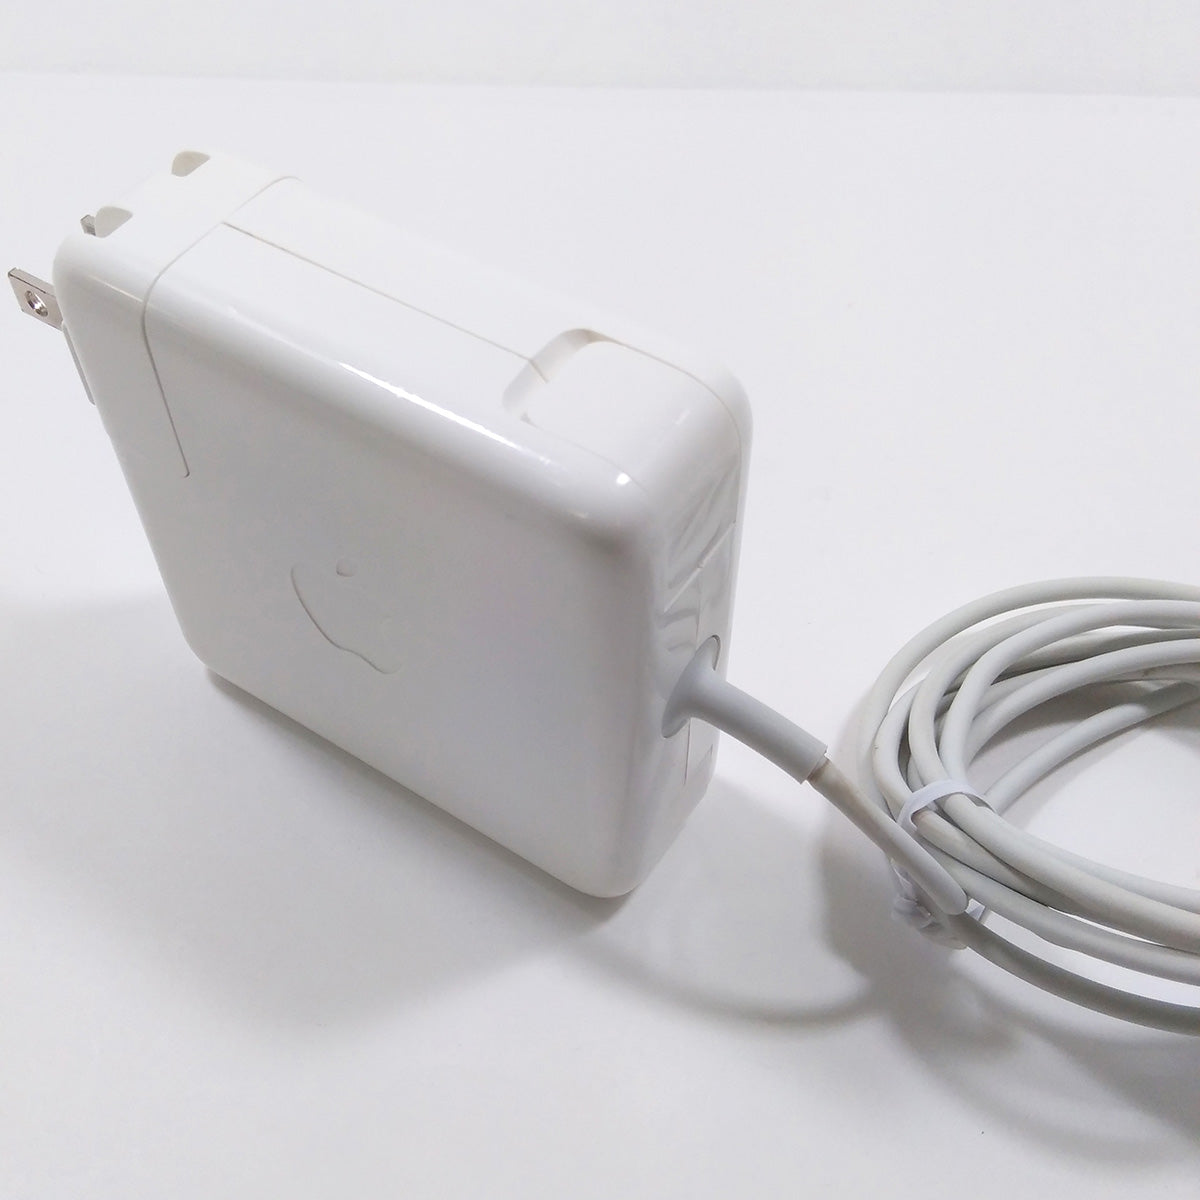 【中古品】Apple 85W MagSafe2 電源アダプタ [A_MD506J/A]